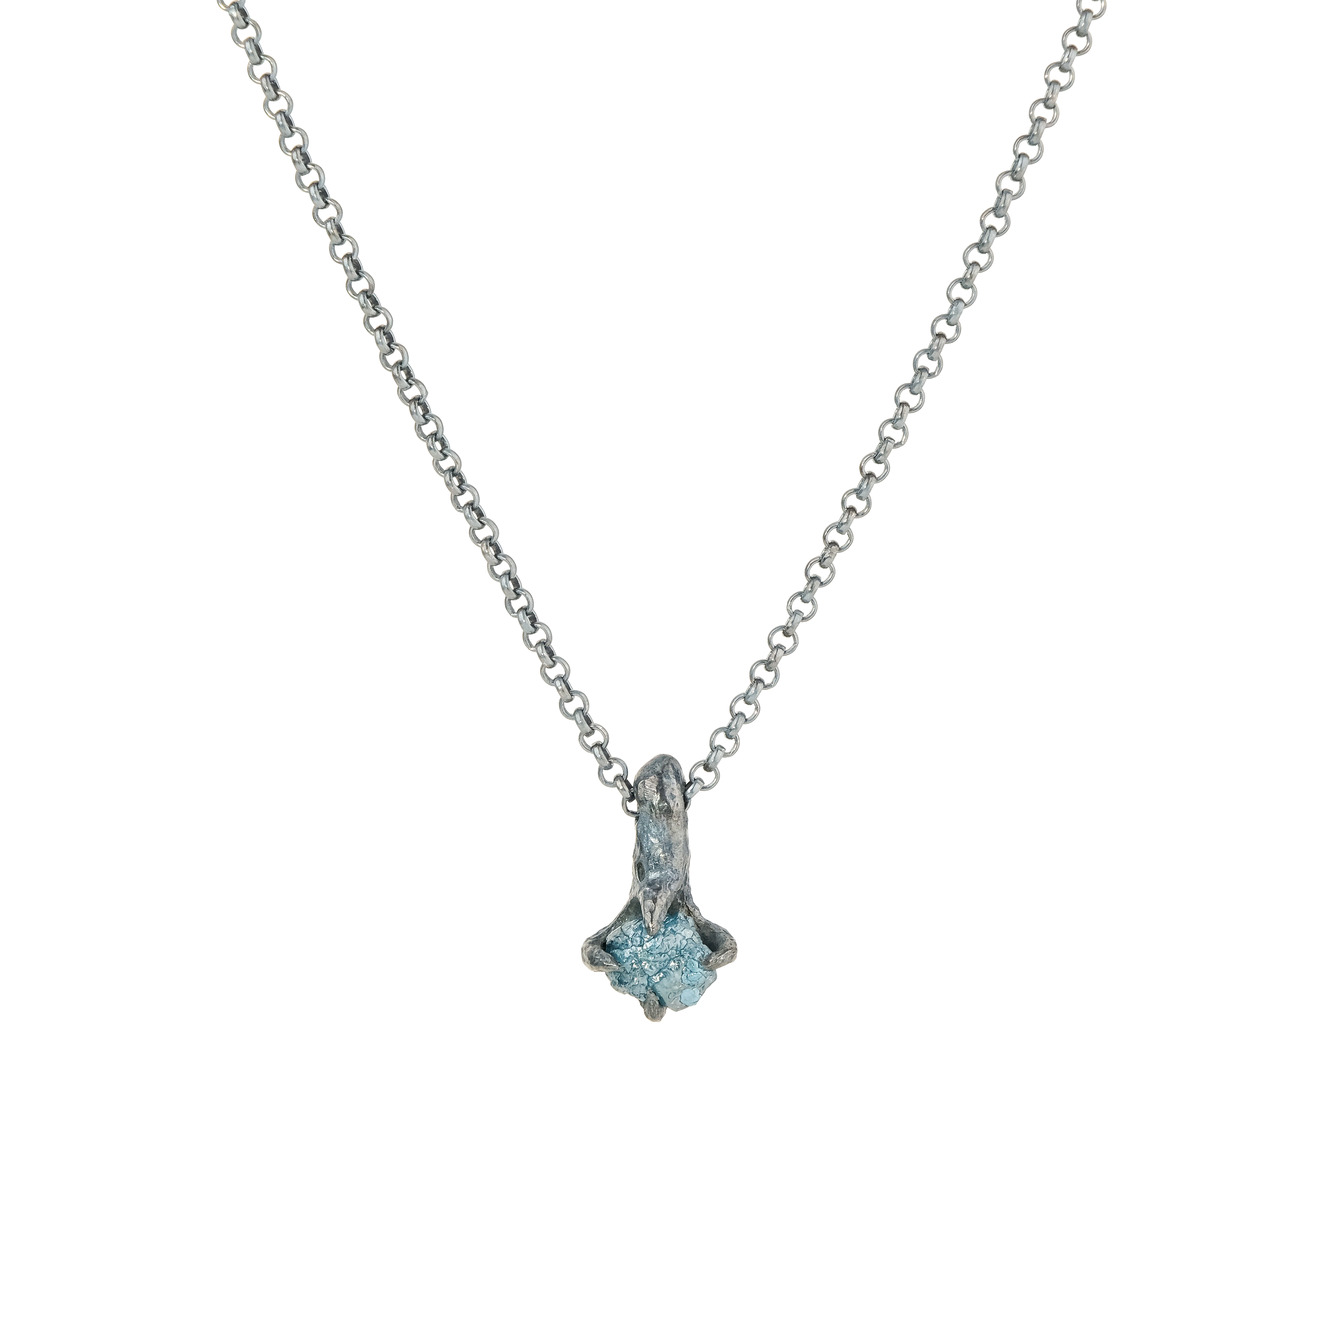 kintsugi jewelry кулон patience из серебра с кристаллом кварца Kintsugi Jewelry Кулон Patience из серебра с кристаллом кварца